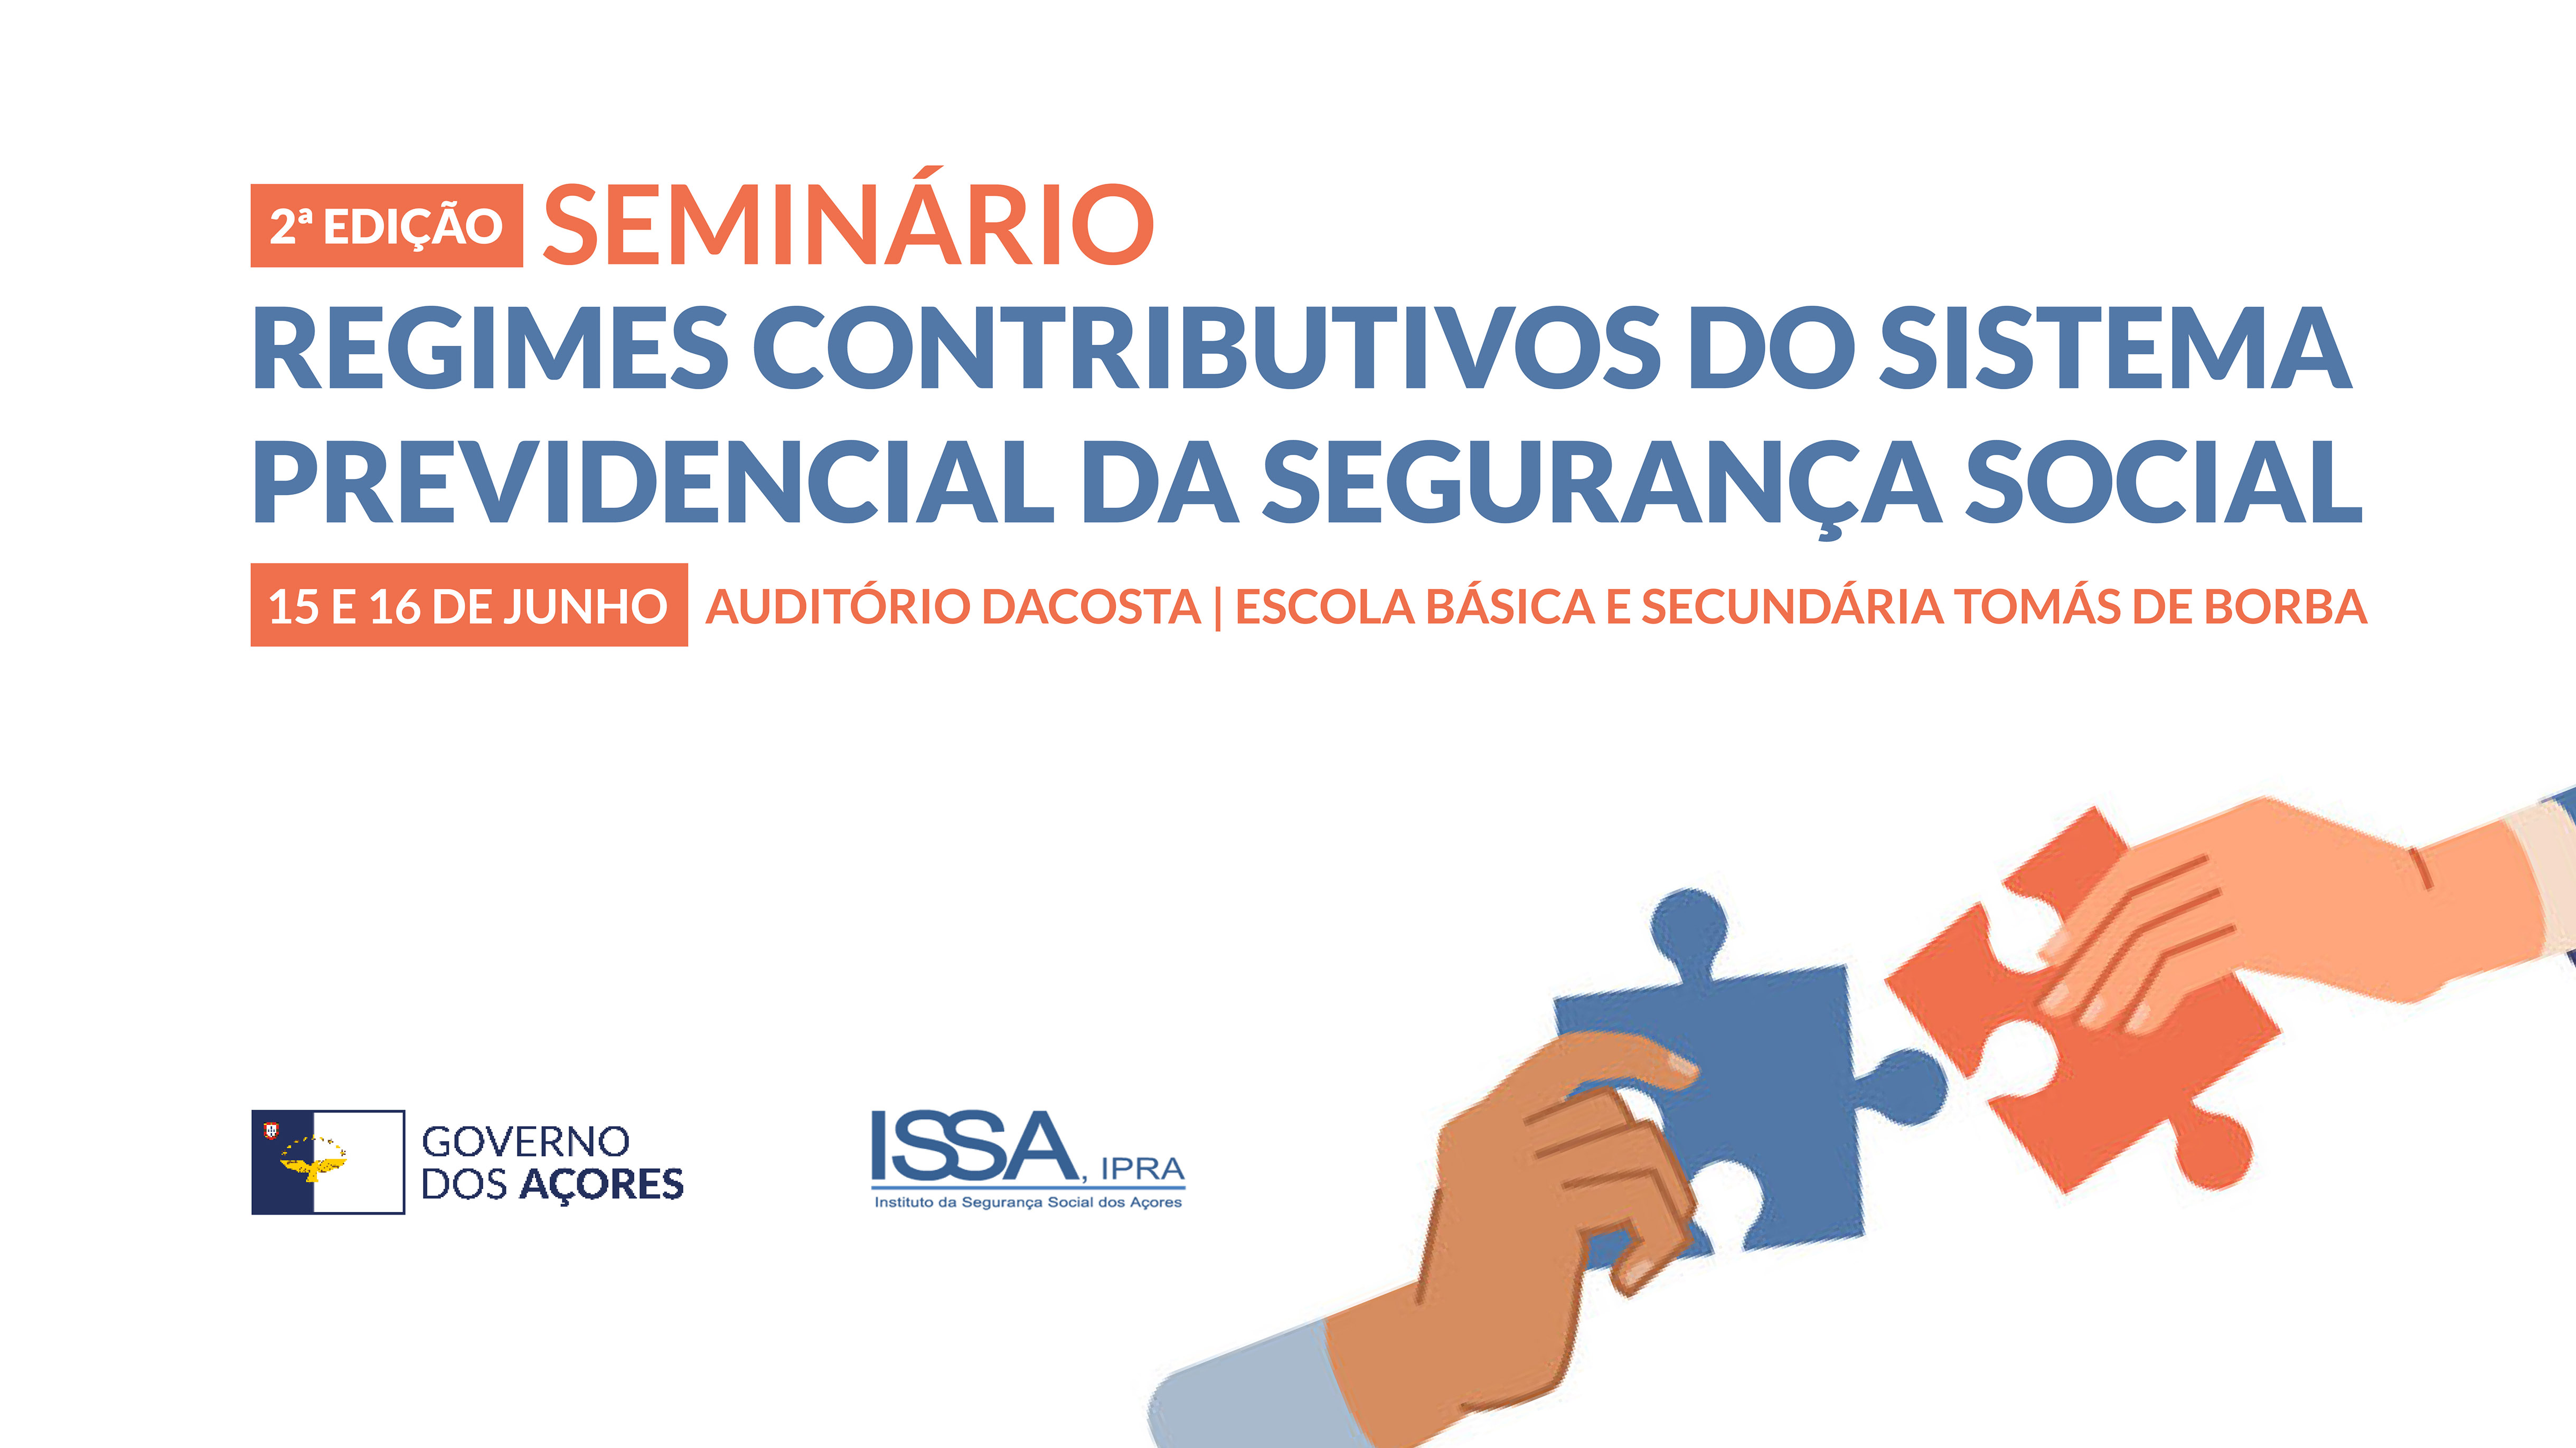 Segunda edição do seminário “Regimes Contributivos do Sistema Previdencial da Segurança Social” decorre em Angra do Heroísmo